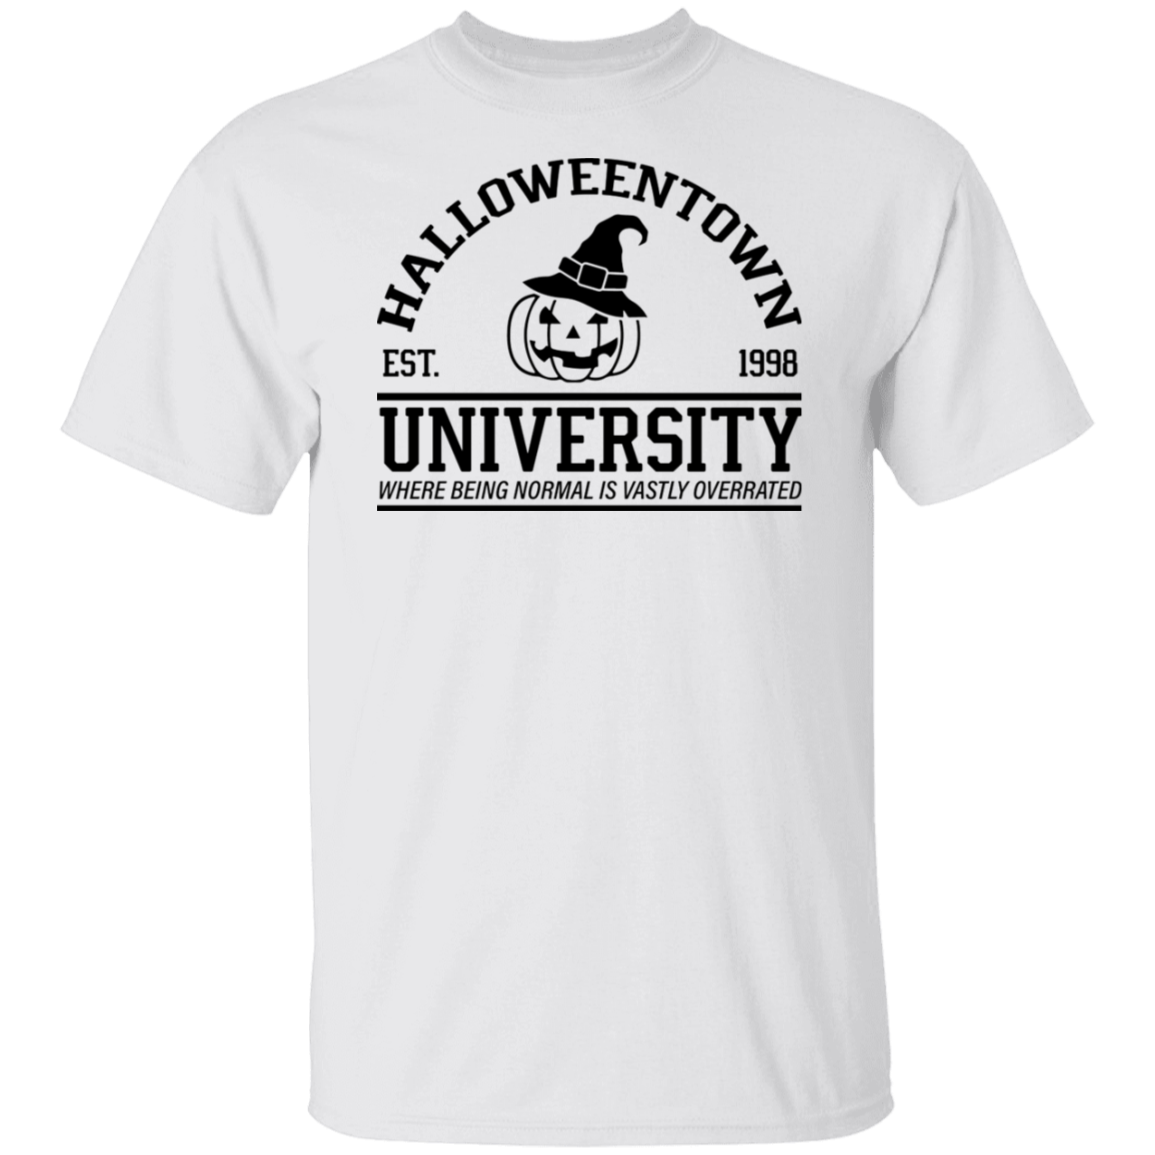 Halloween Town University T-Shirt